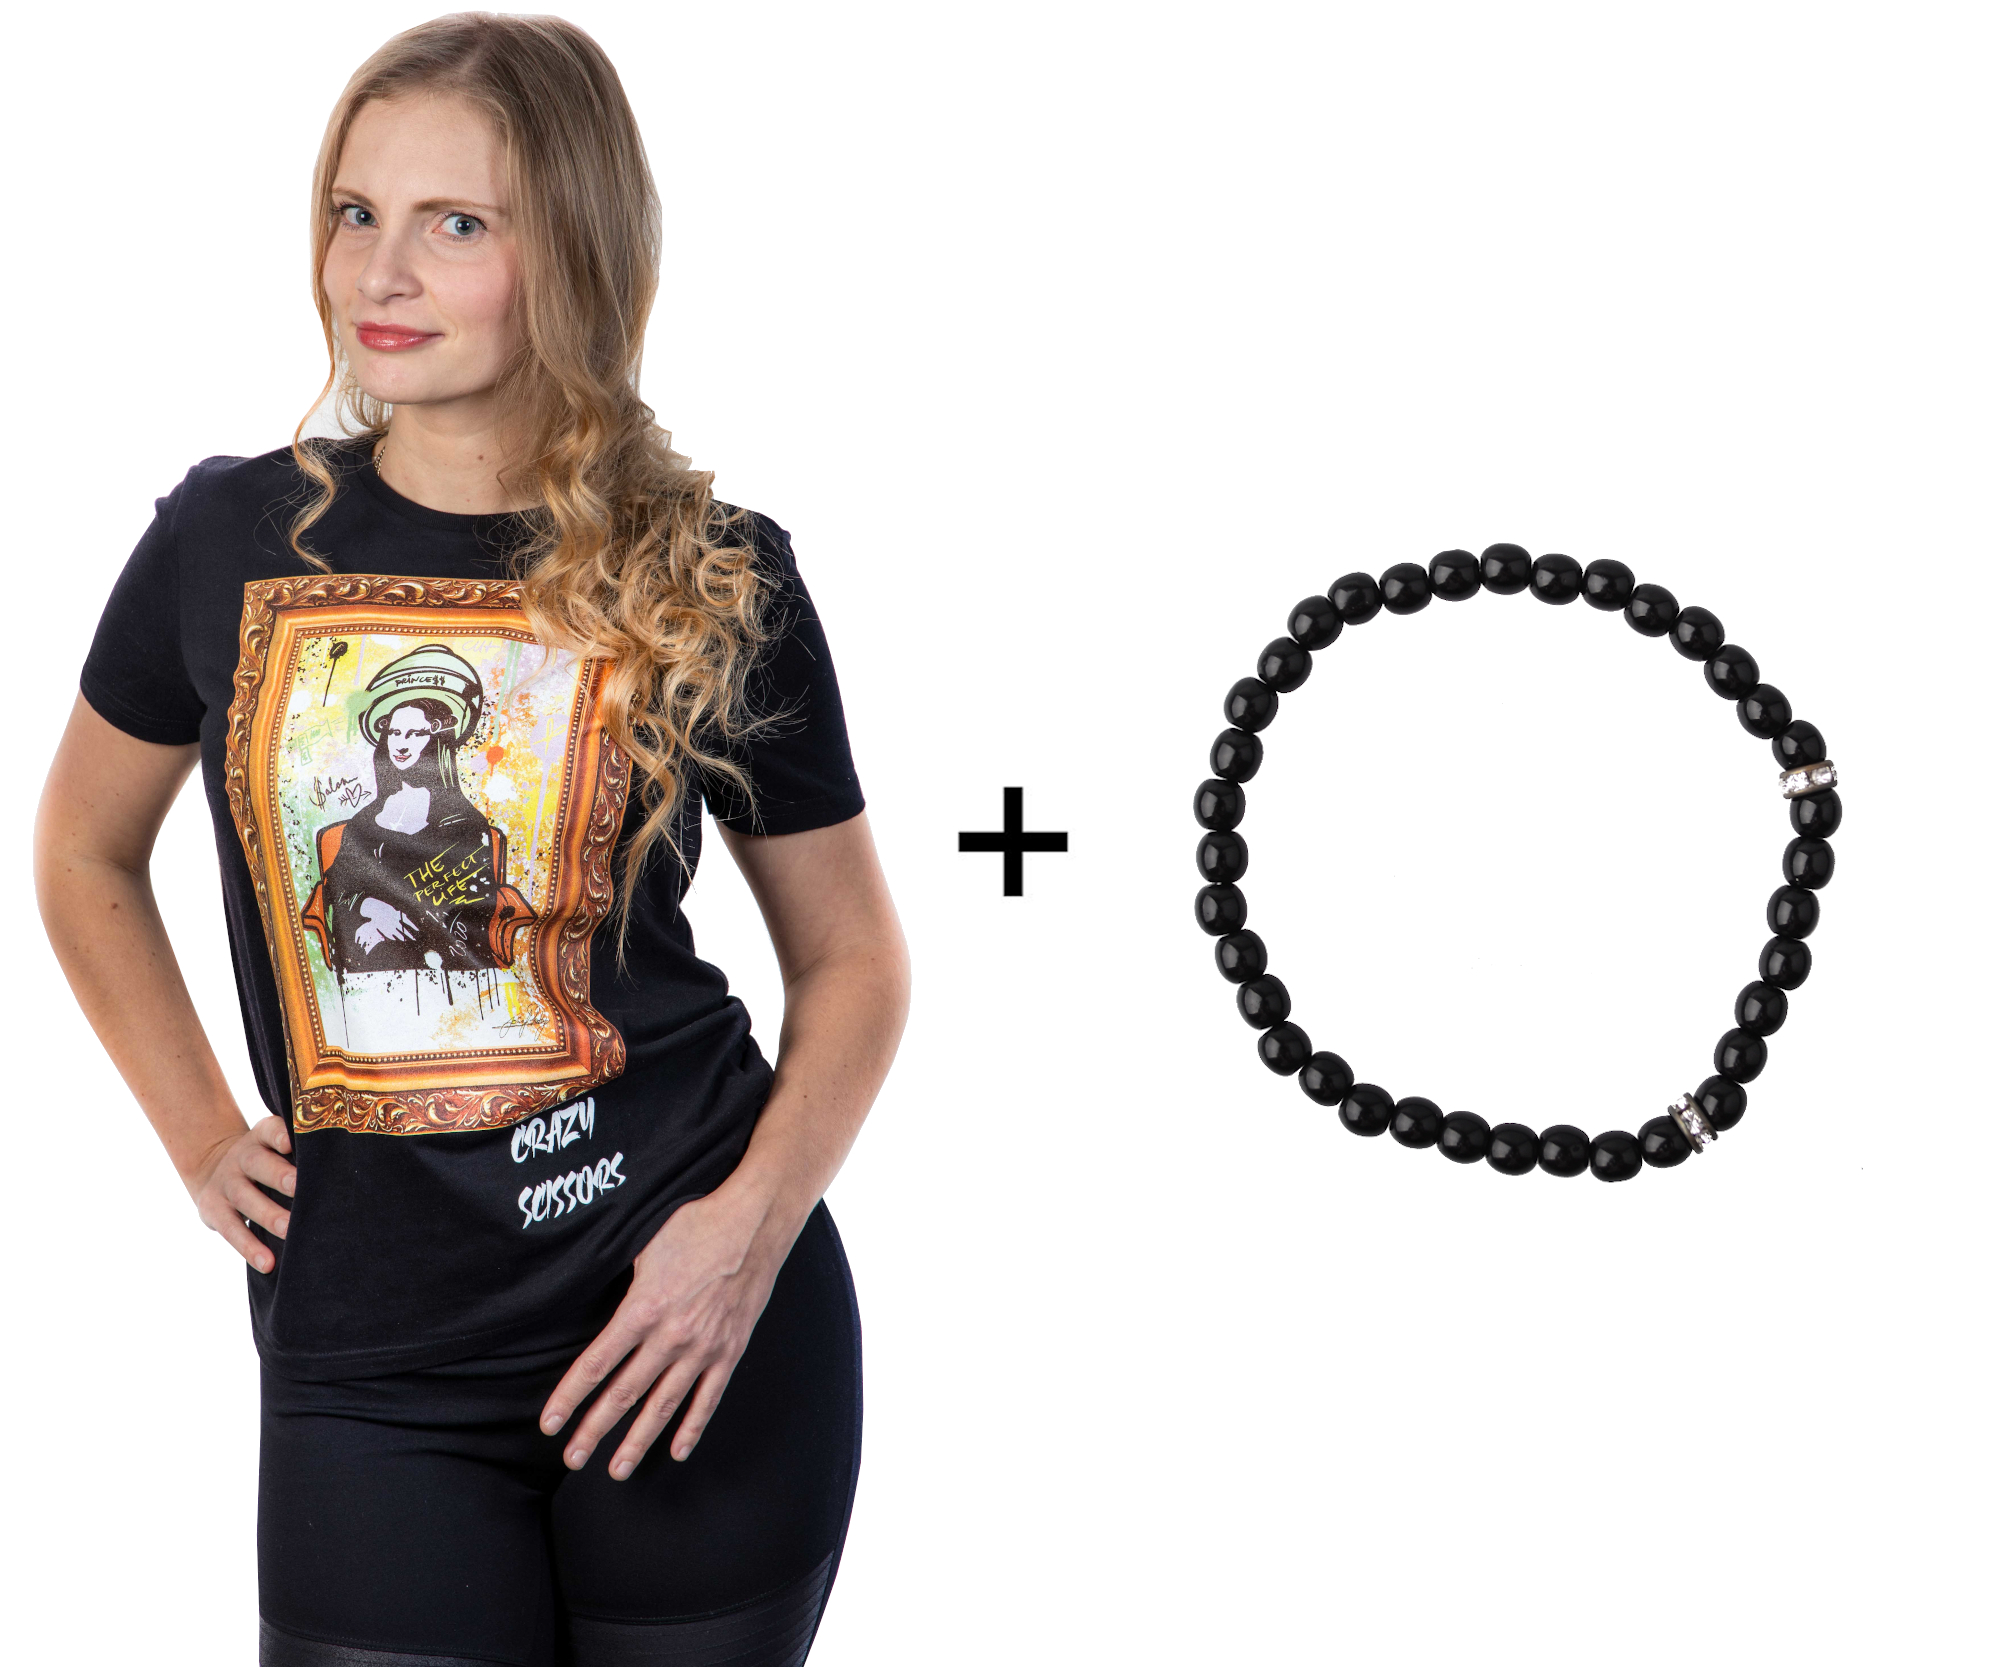 Tričko s krátkým rukávem Crazy Scissors Mona Lisa - černé, S + náramek Loréal Preciosa zdarma + DÁREK ZDARMA